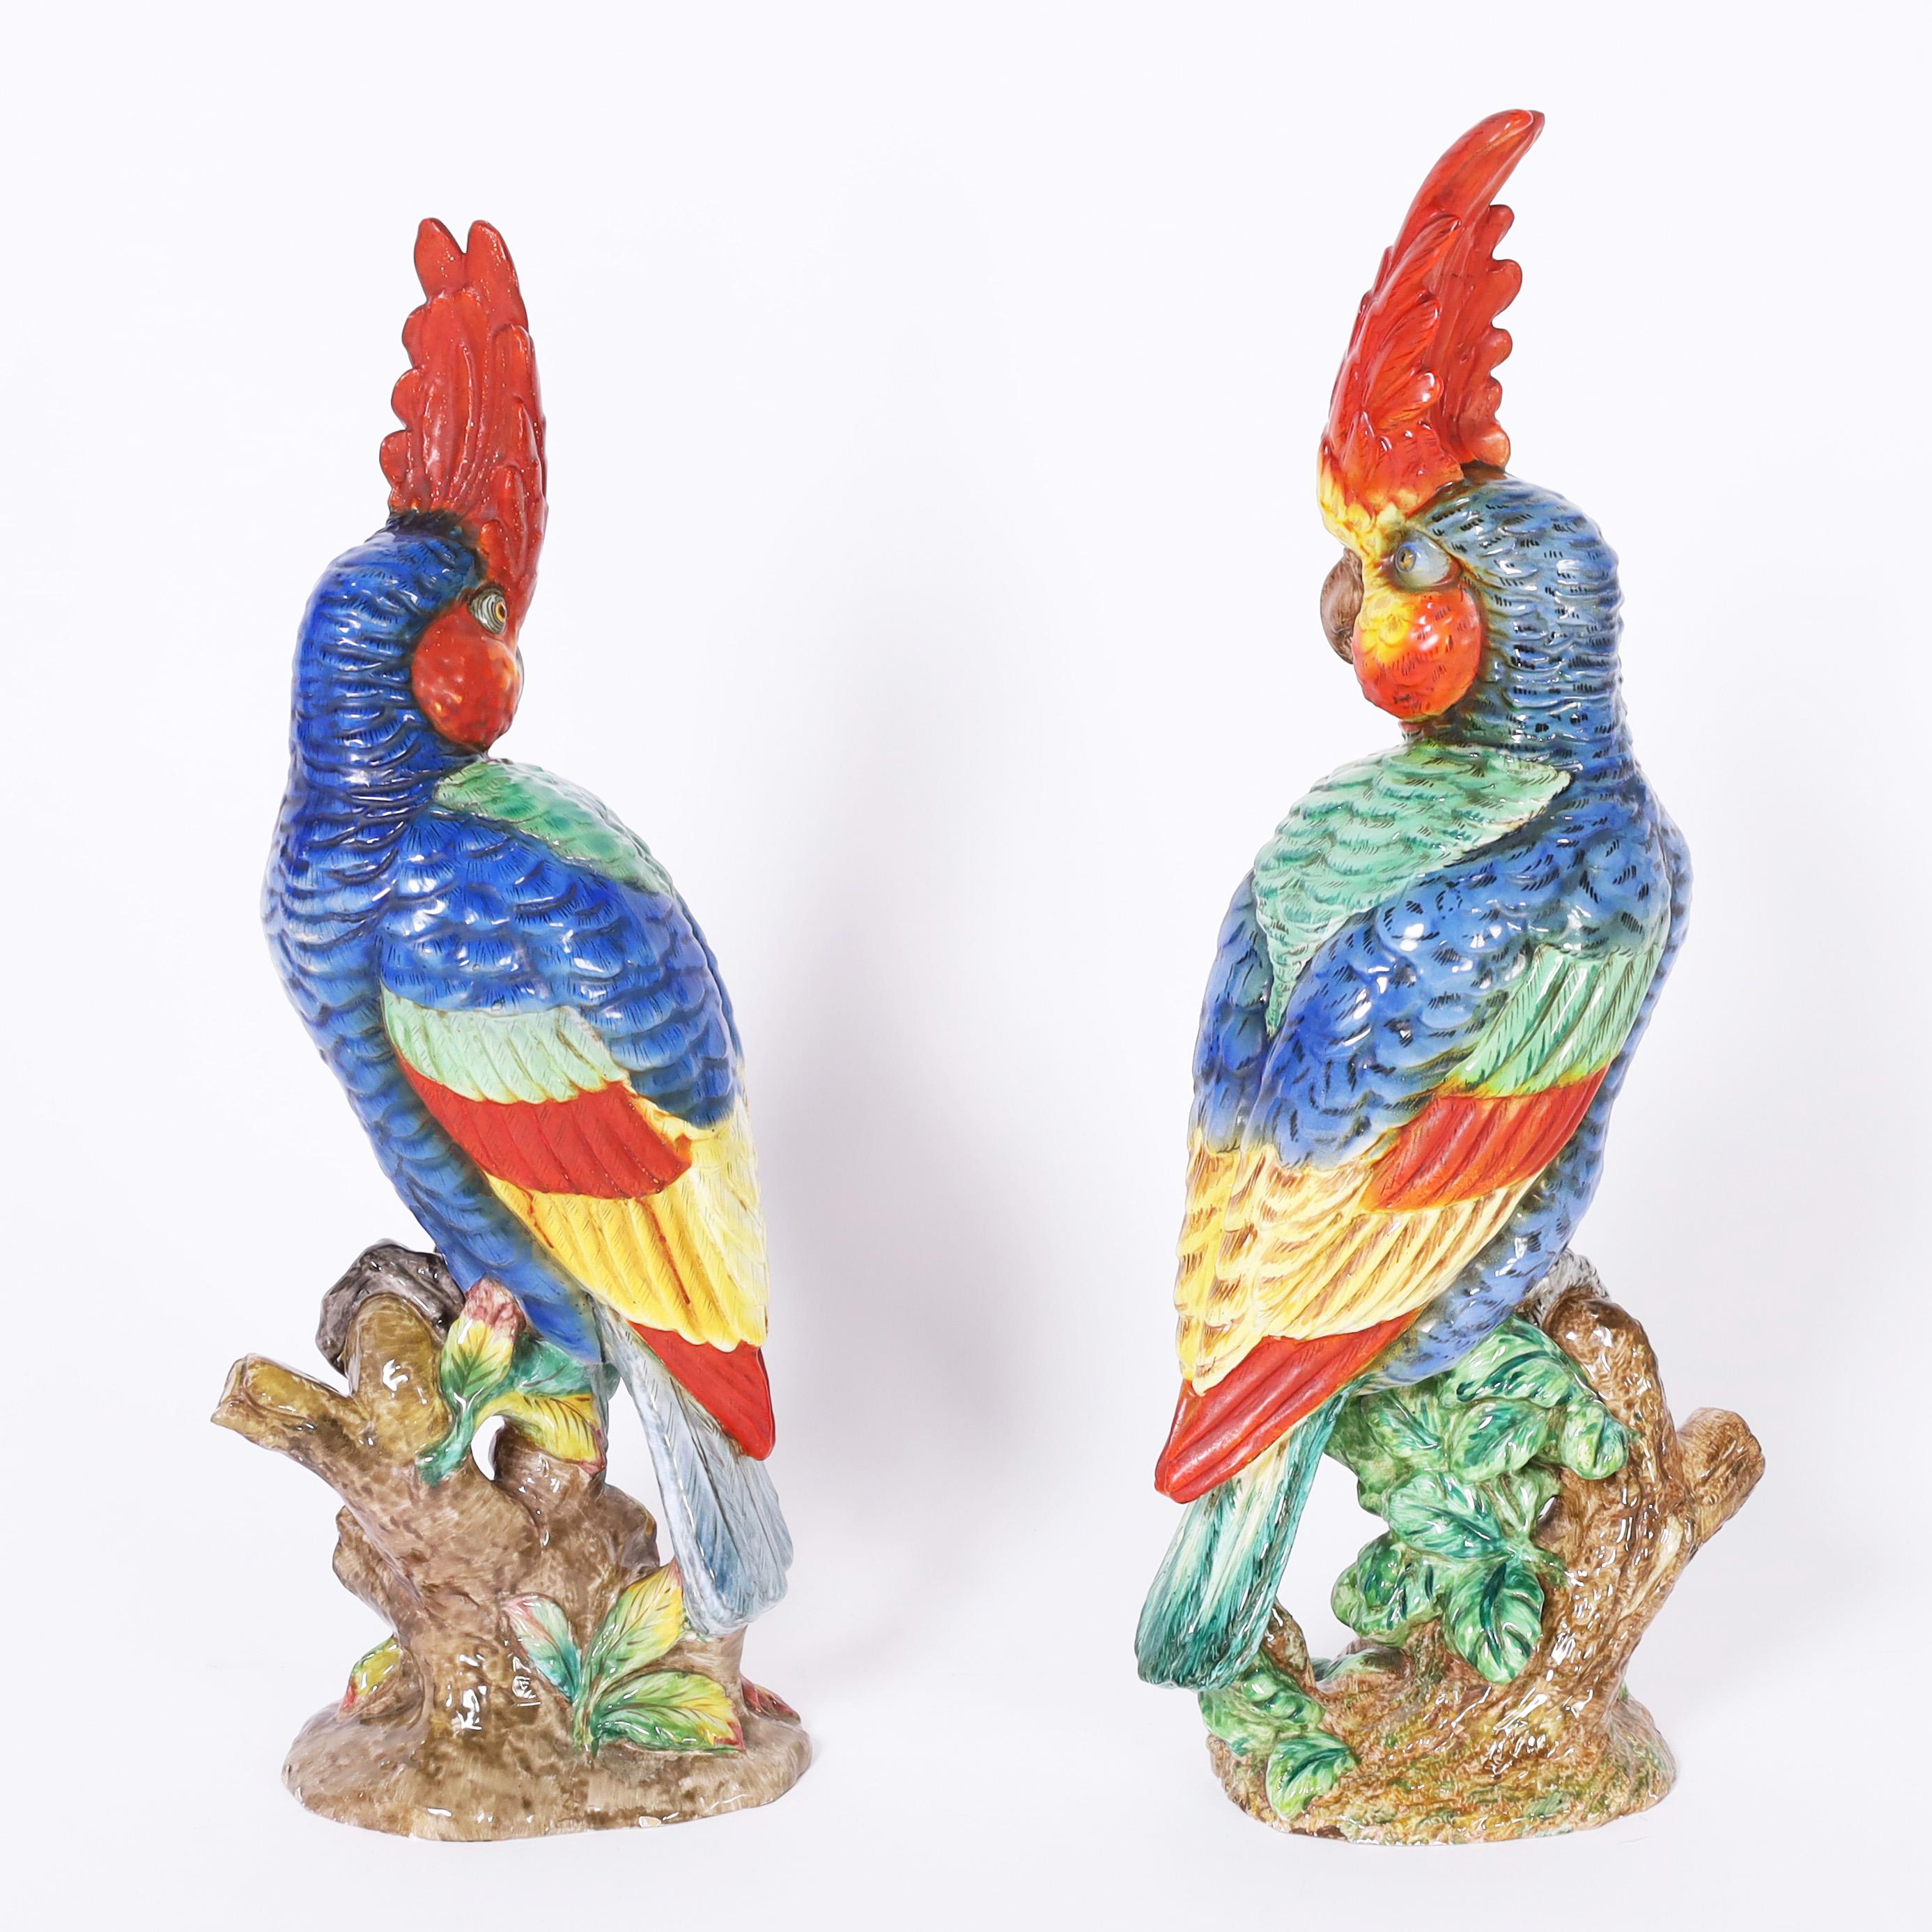 Auffallendes Paar lebensgroßer Porzellan-Papageien auf Baumstämmen, handdekoriert mit lebhaften tropischen Farben und signiert Zaccognini auf der Unterseite.

Links: H: 21,5 B: 8 T: 6
Rechts: H: 22,5 B: 9 T: 6